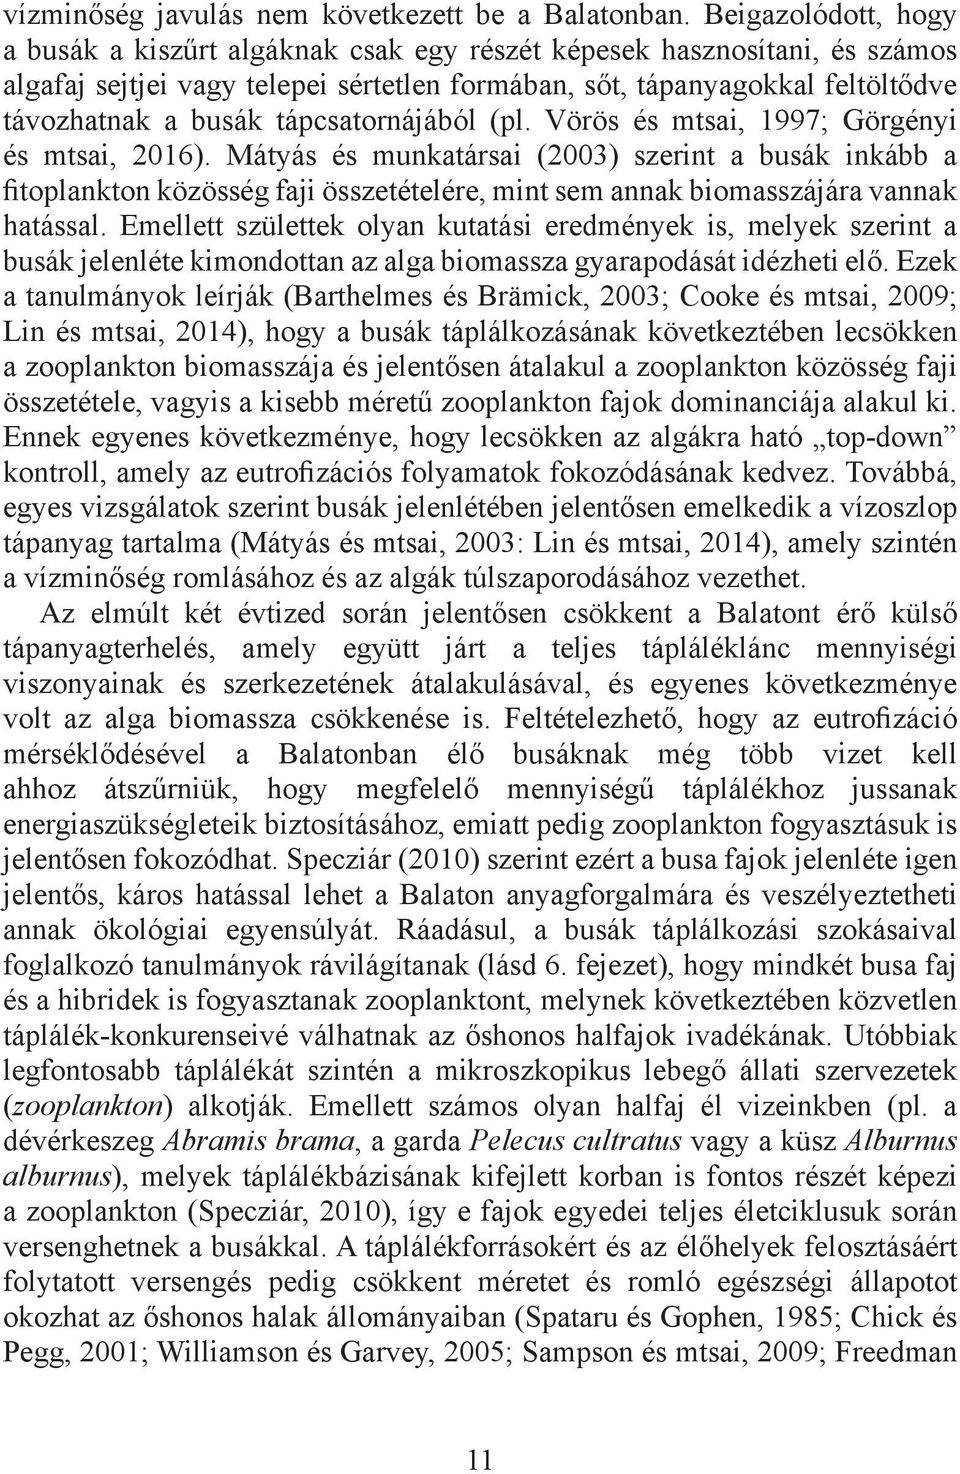 tápcsatornájából (pl. Vörös és mtsai, 1997; Görgényi és mtsai, 2016).